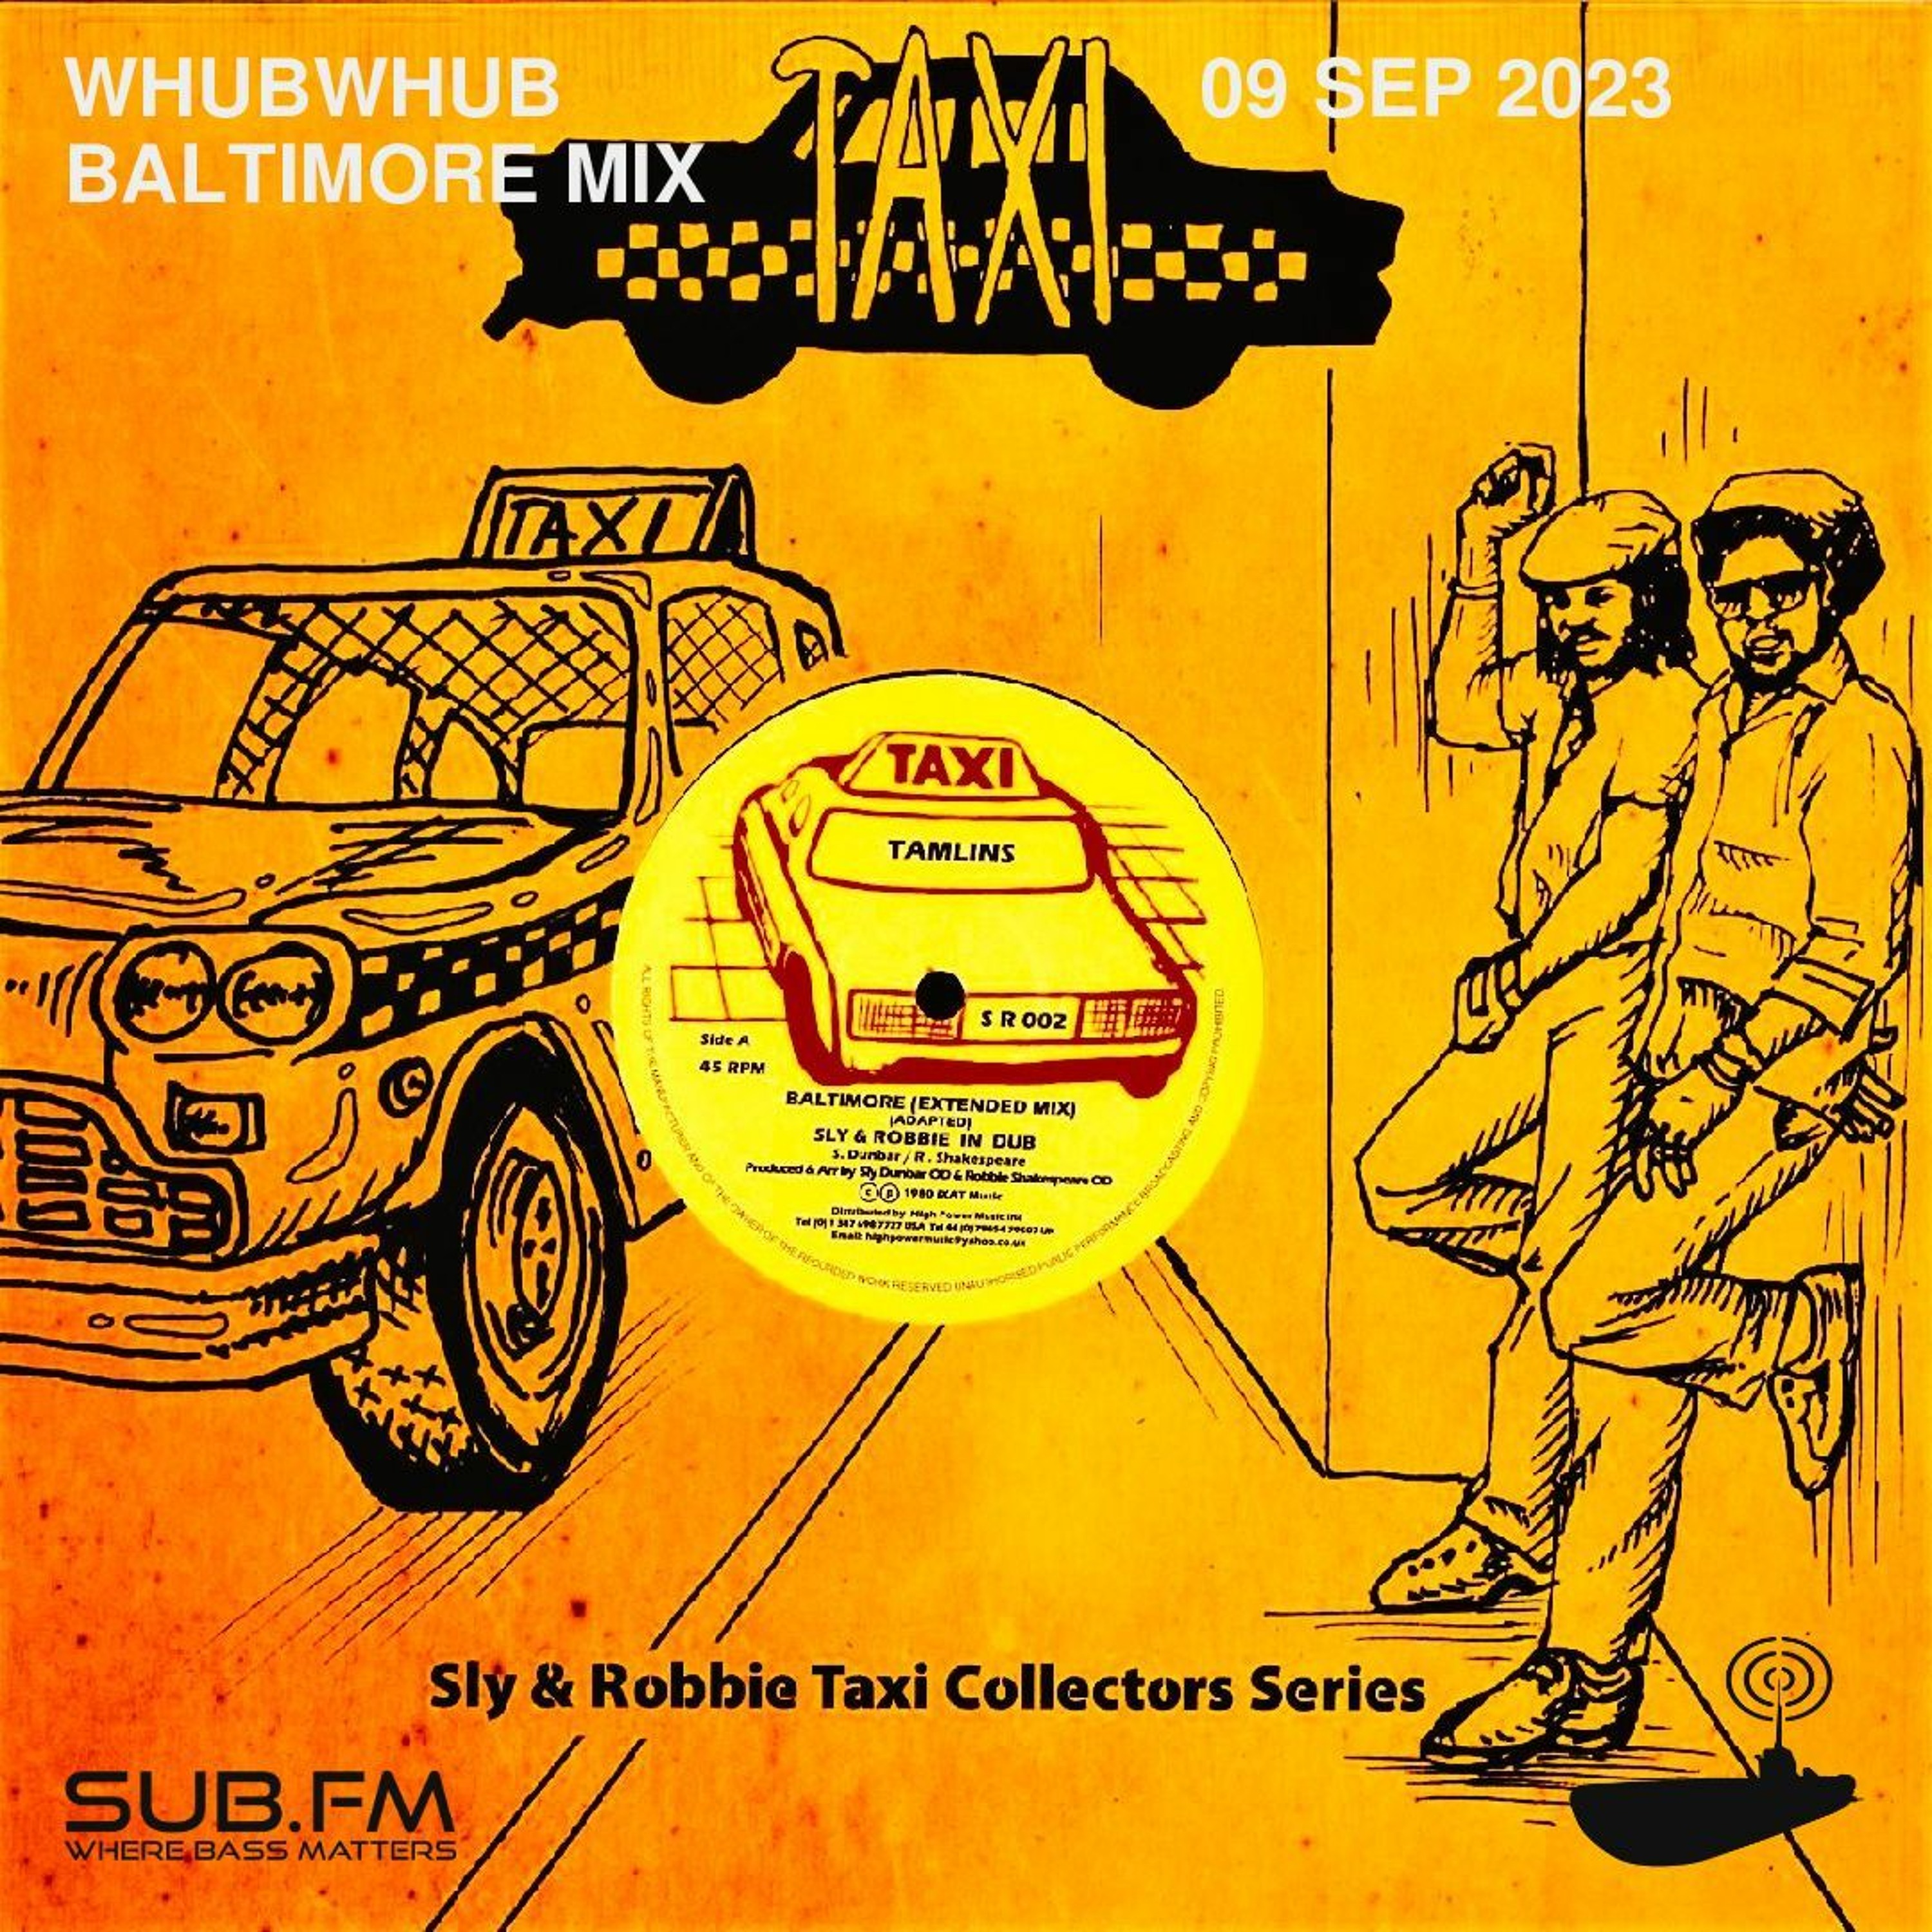 Whubwhub Baltimore Mix - 09 Sep 2023